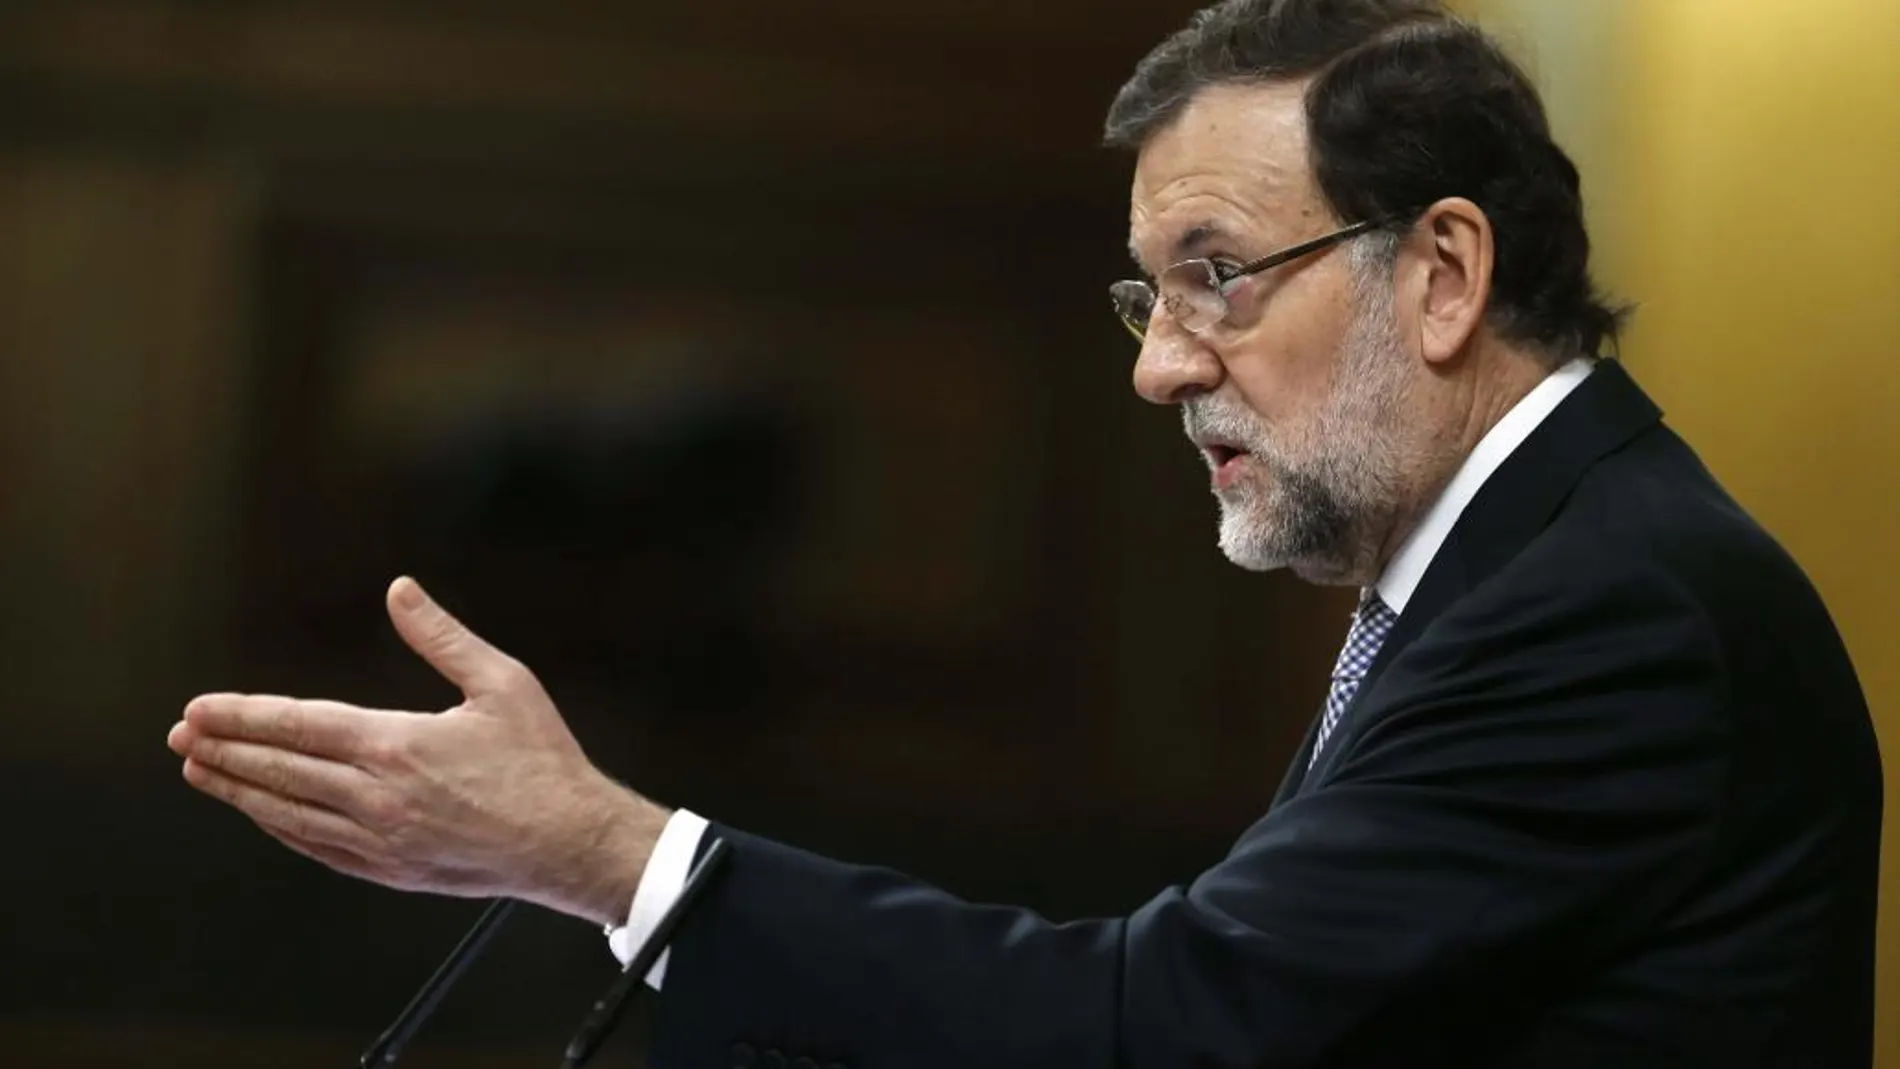 El presidente del Gobierno español, Mariano Rajoy, interviene en la segunda jornada del debate.